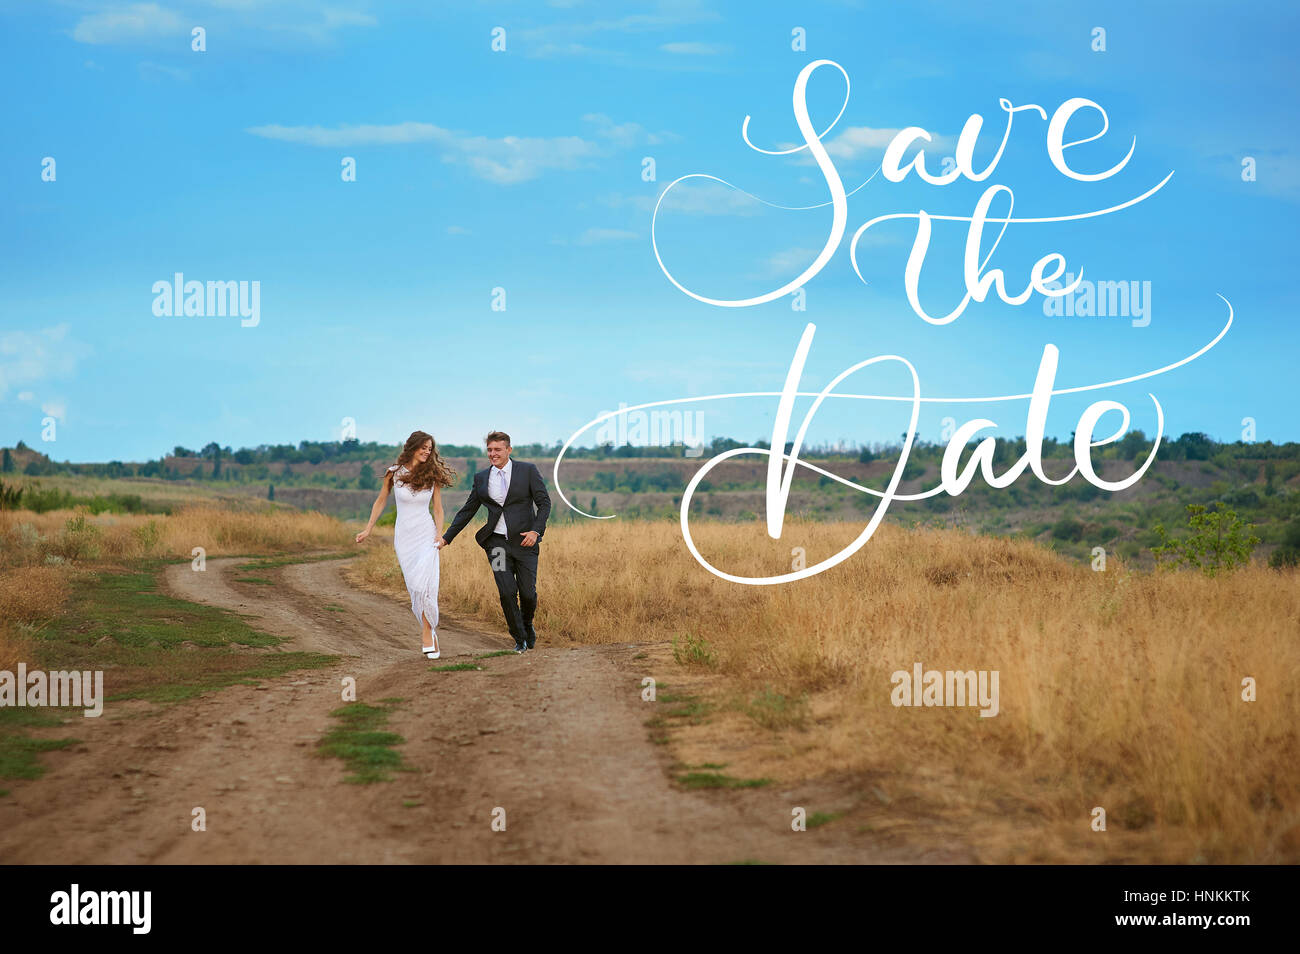 L'époux et l'épouse de marcher sur le champ dans le jour du mariage et les mots Réservez la date. Lettrage calligraphie Banque D'Images